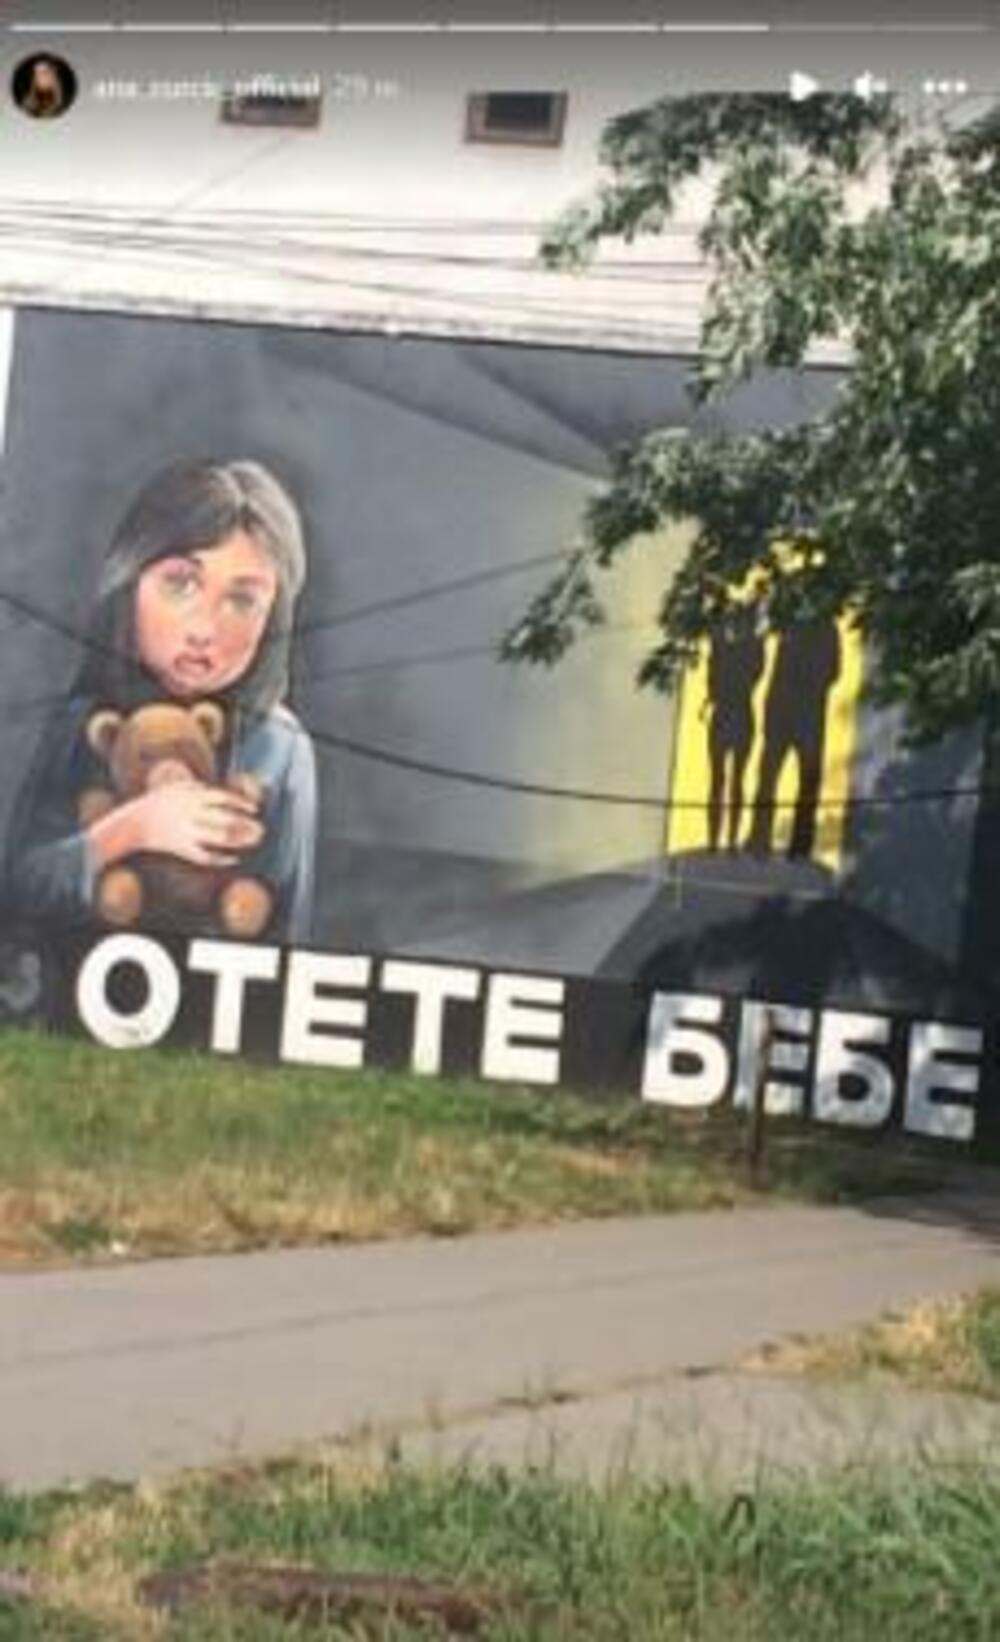 Ana je objavila grafit koji je posvećen ukradenim i otetim bebama, a poznato je da se spekulisalo da je i njeno dete oteto od Bulića i nje